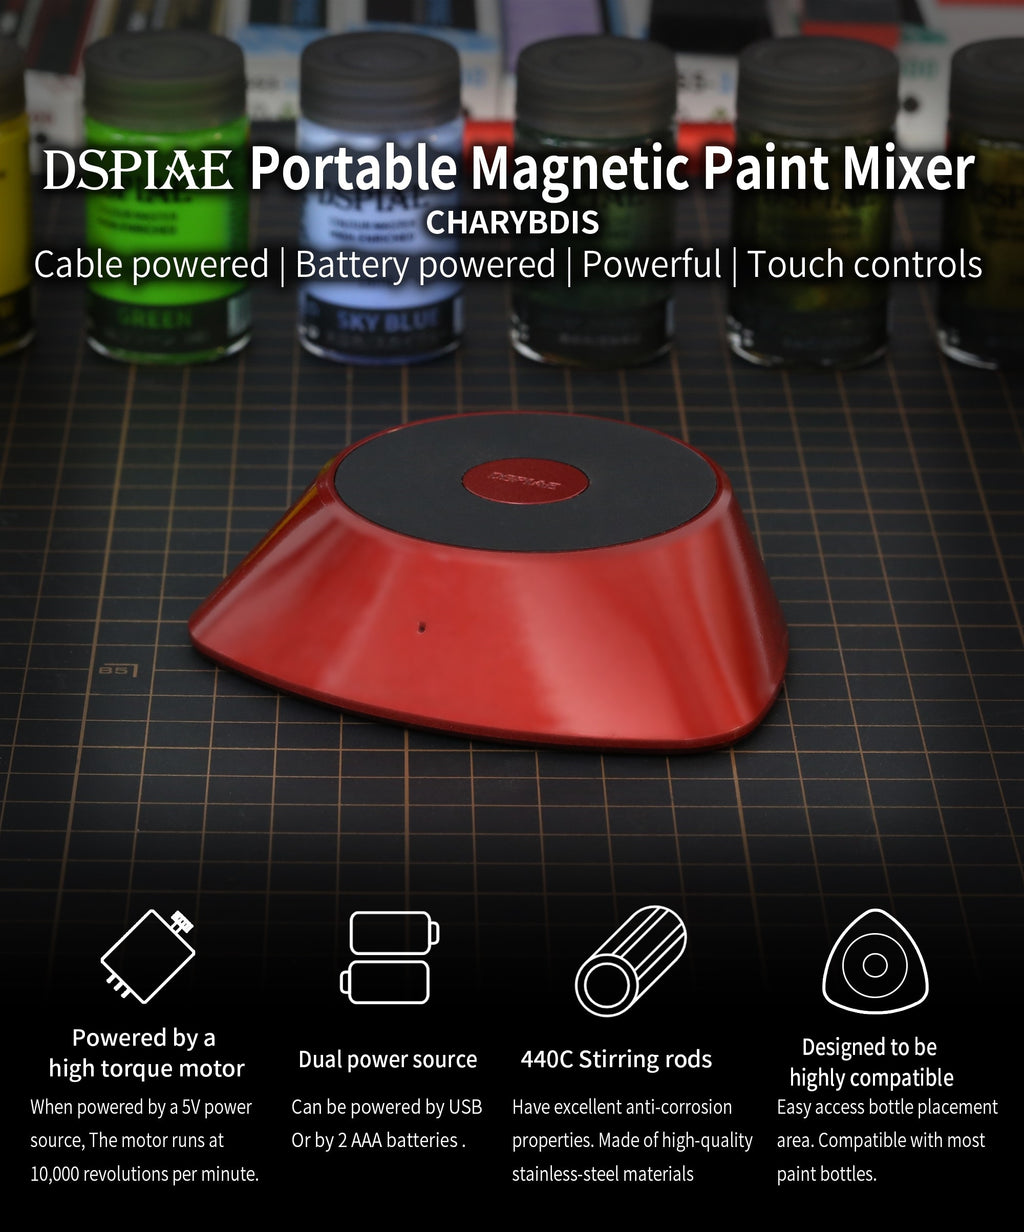 MS-01 Le DSPIAE Portable Magnetic Paint Stirrer 56998LE